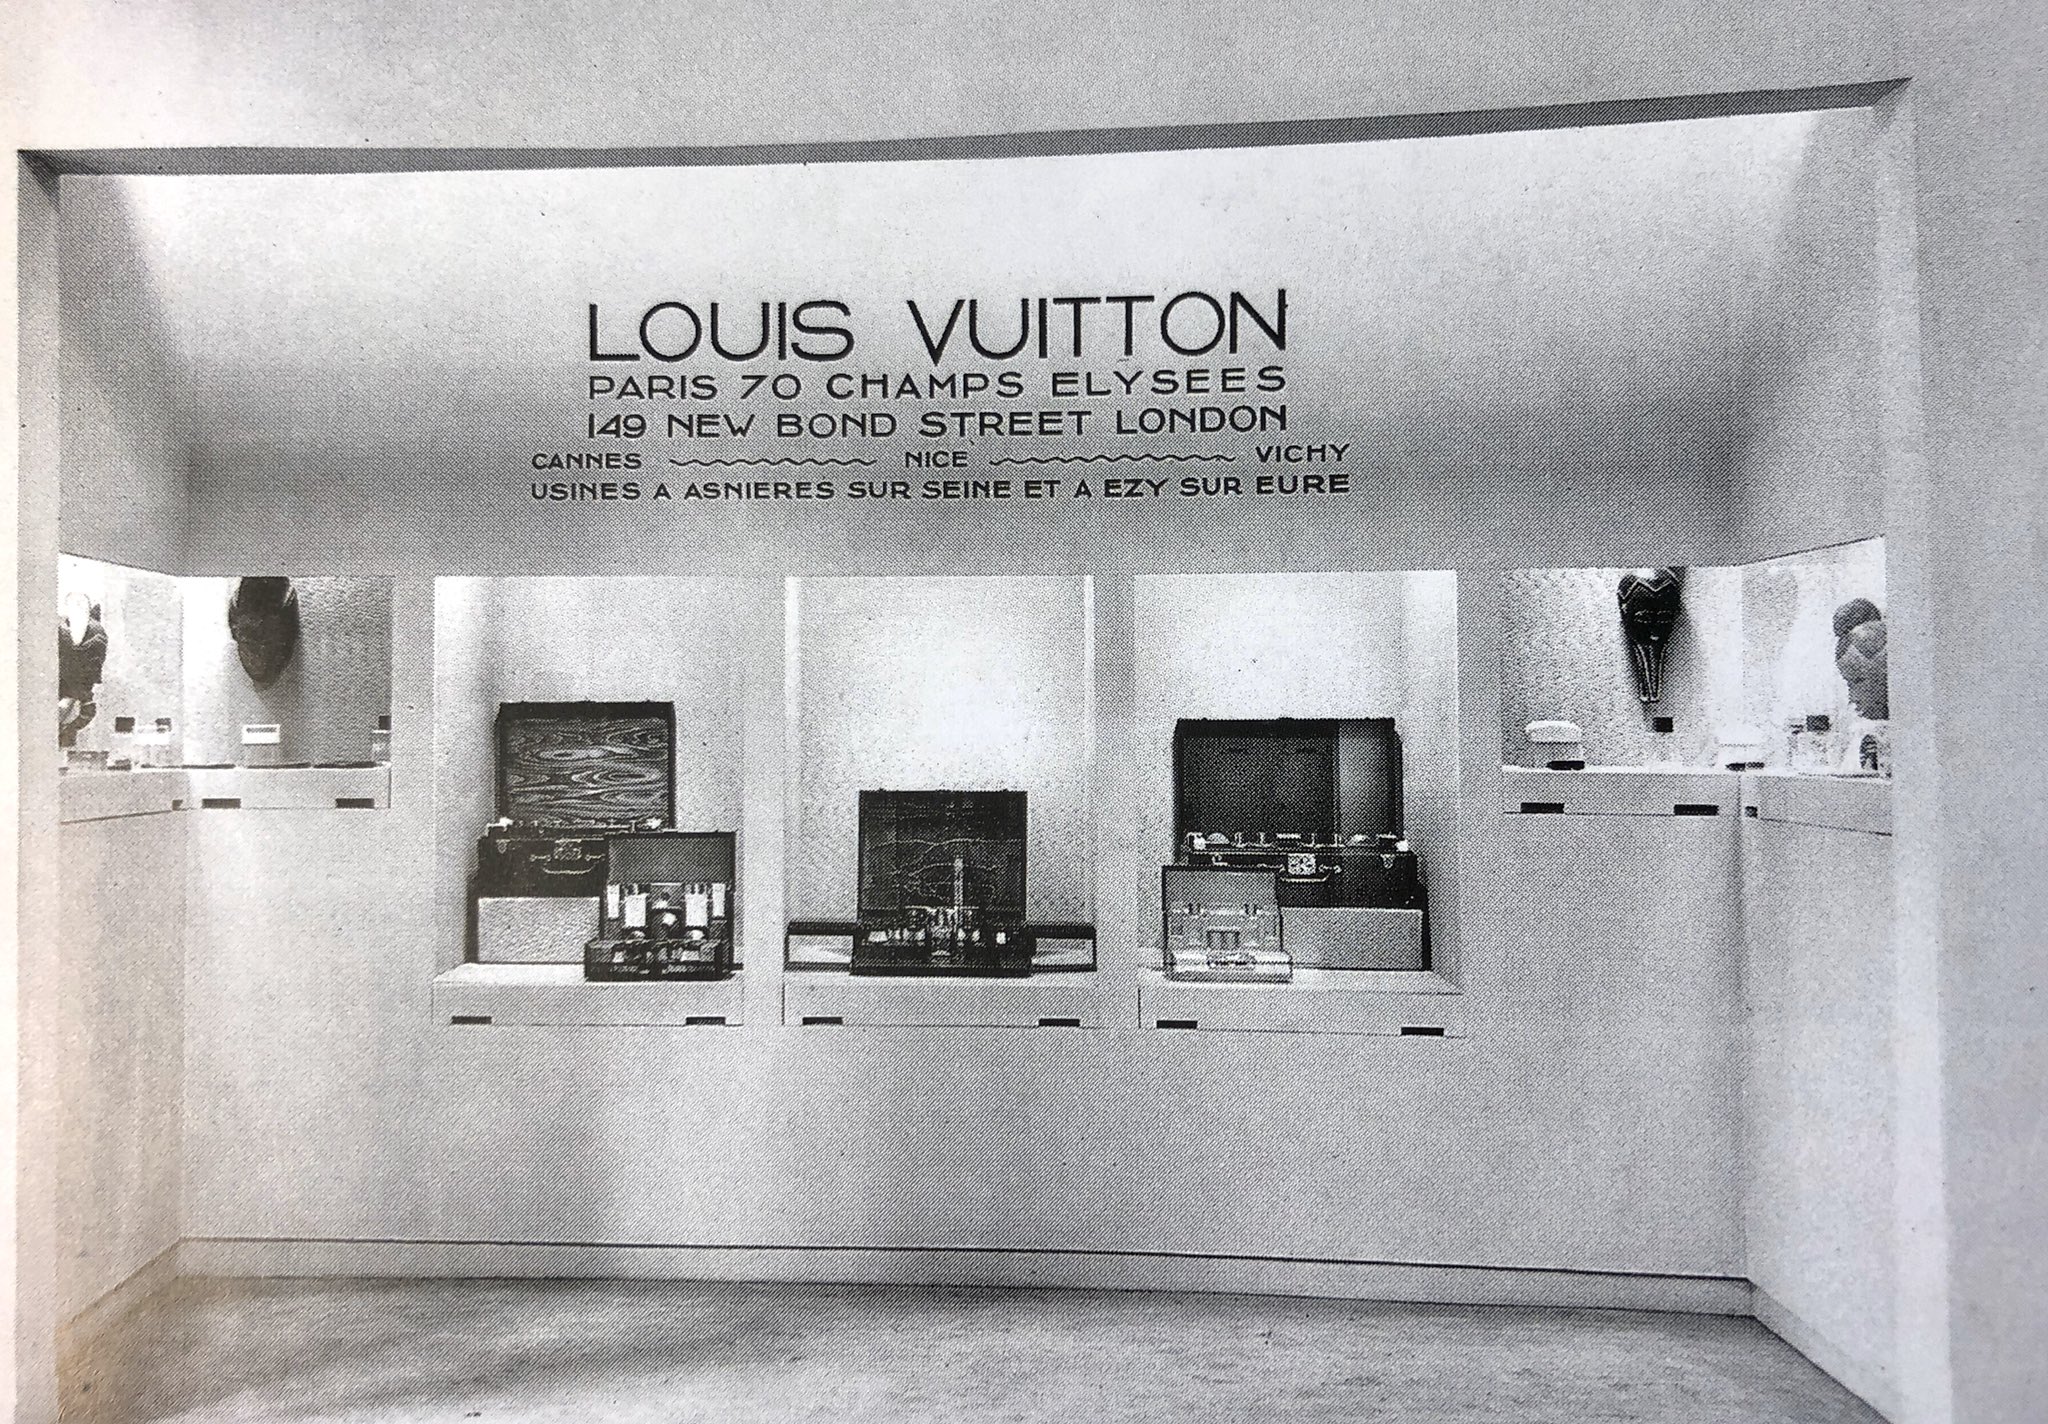 Amanda Wasielewski on X: Louis Vuitton display in their pavilion